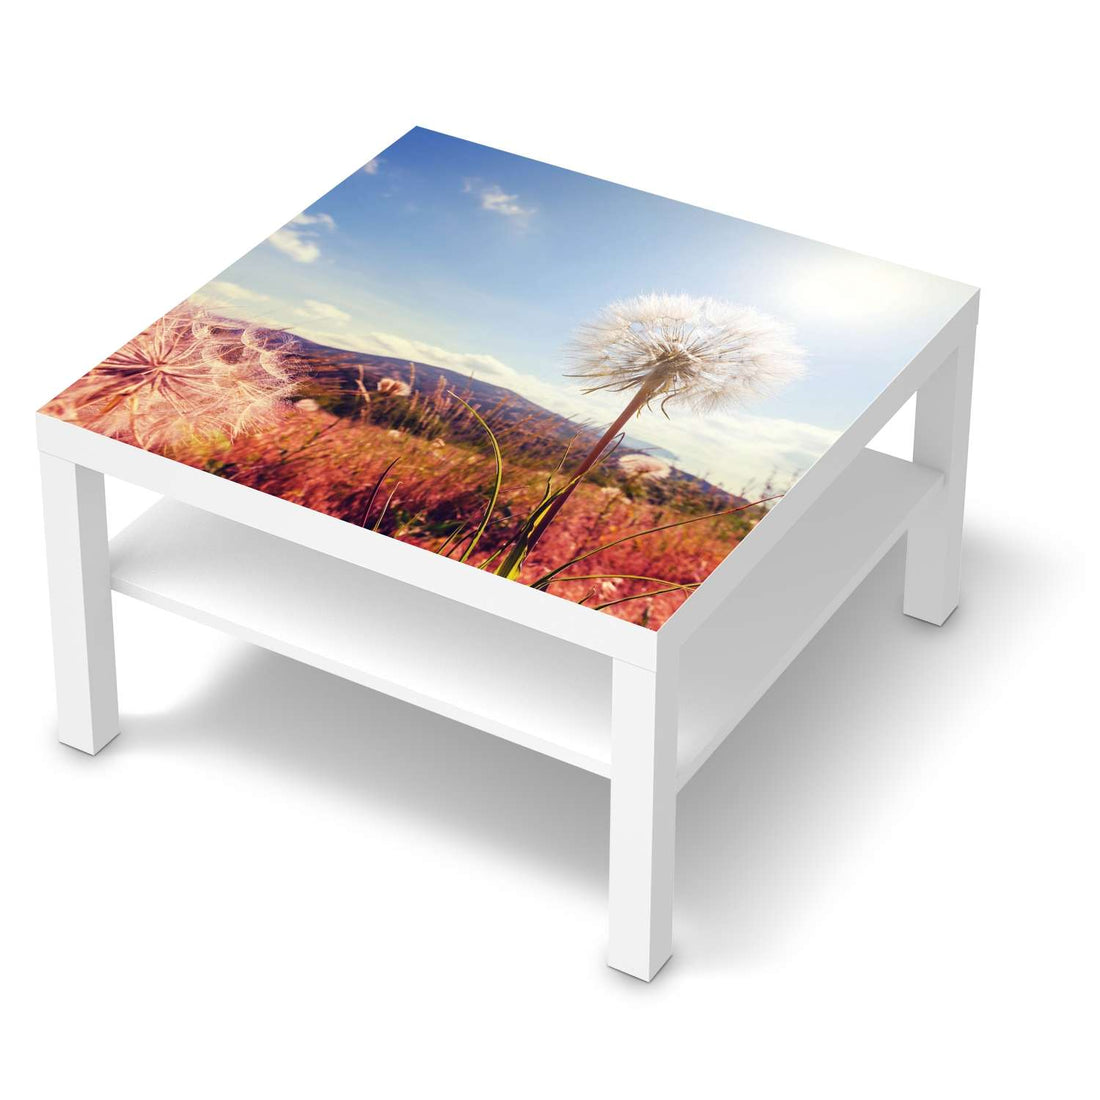 Selbstklebende Folie Dandelion - IKEA Lack Tisch 78x78 cm - weiss